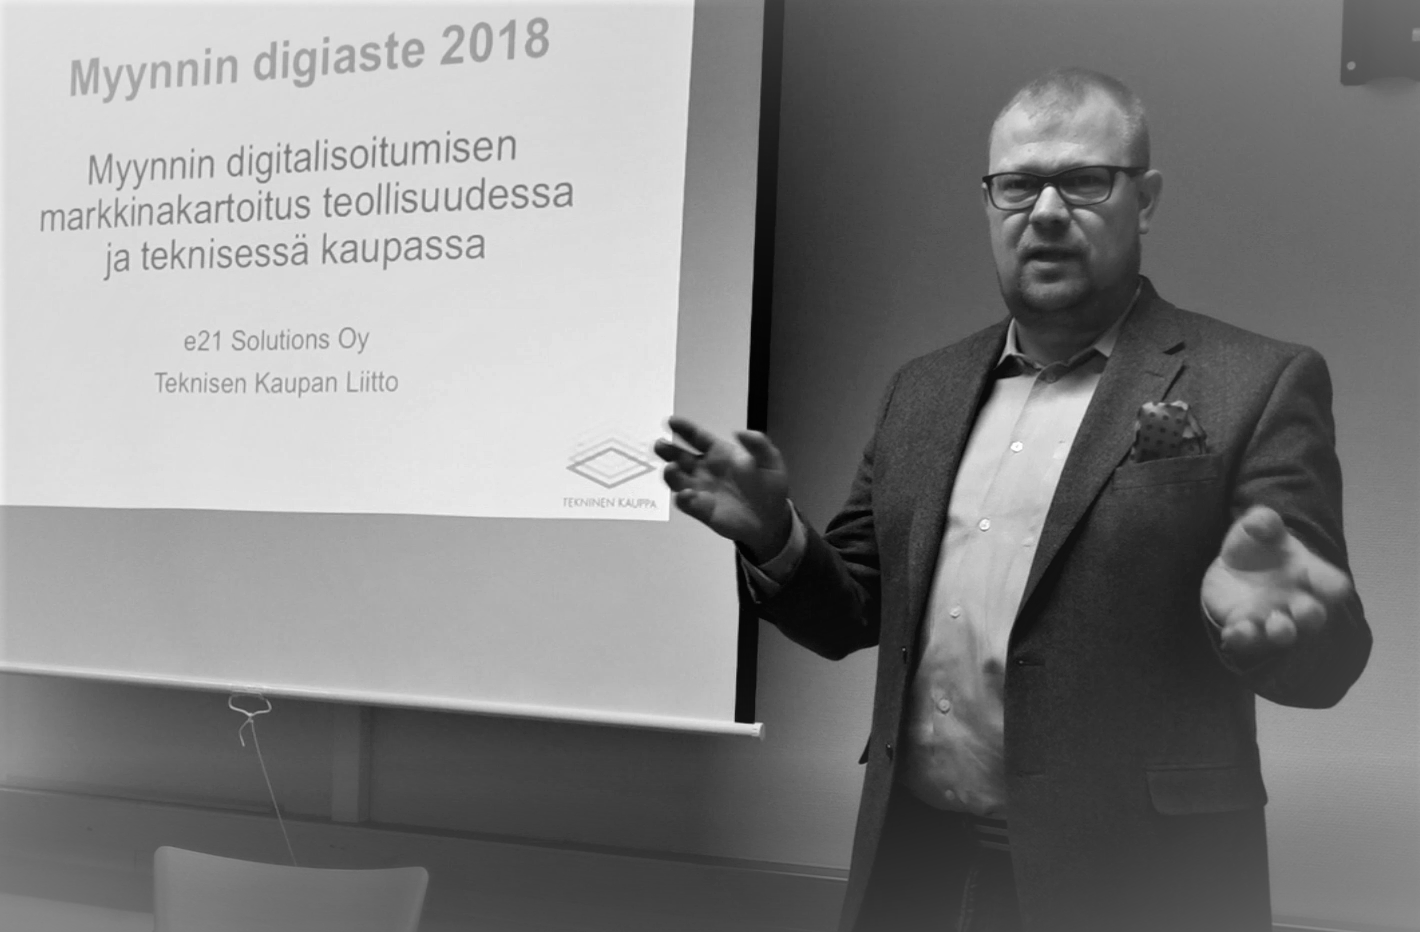 Marko Rautakoura alustaa Teknisen kaupan aamiaistilaisuutta 8.2.2018 e21 Solutions